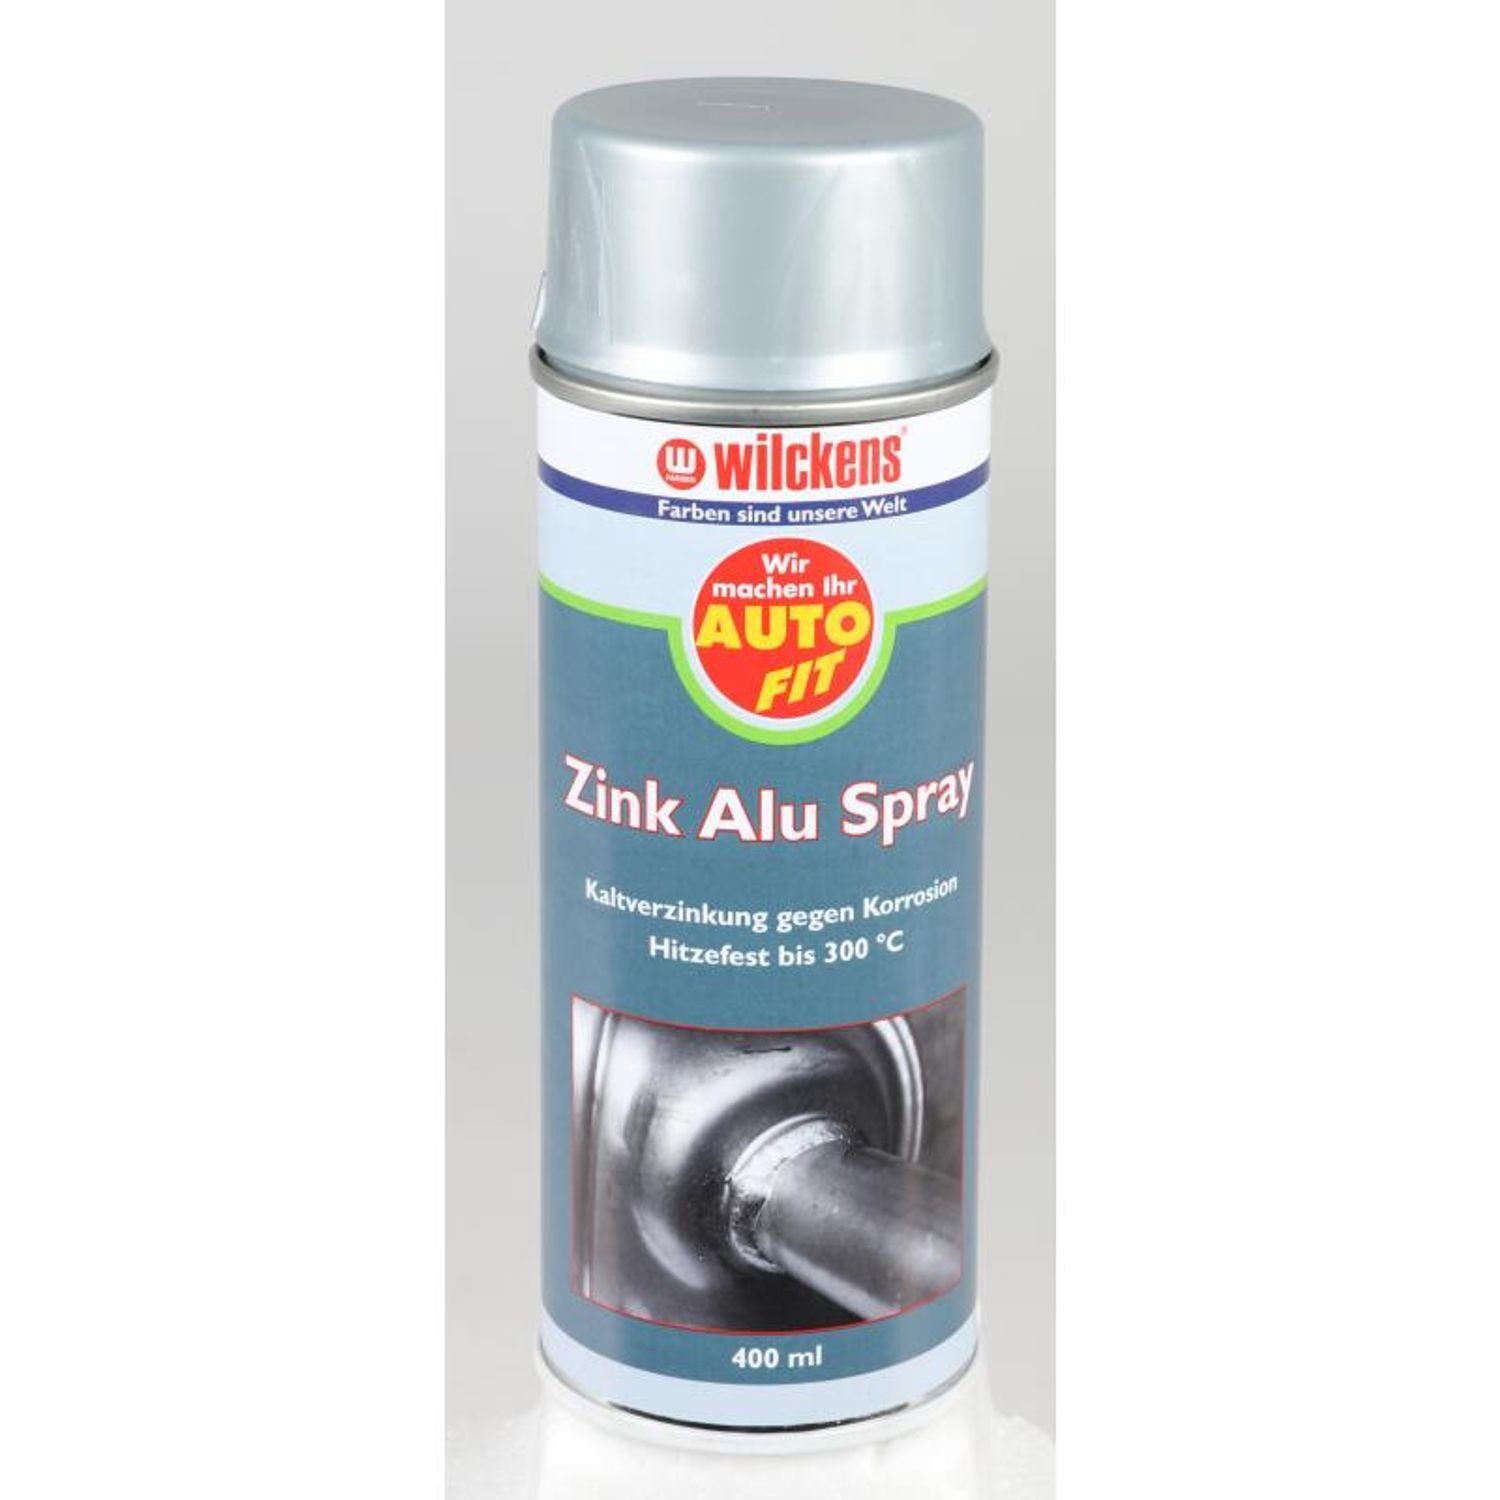 300°C Zink-Alu-Spray 6x Fit Kaltverzinkung Sprühlack Wilckens Auto 400ml bis Hitzefest Farben